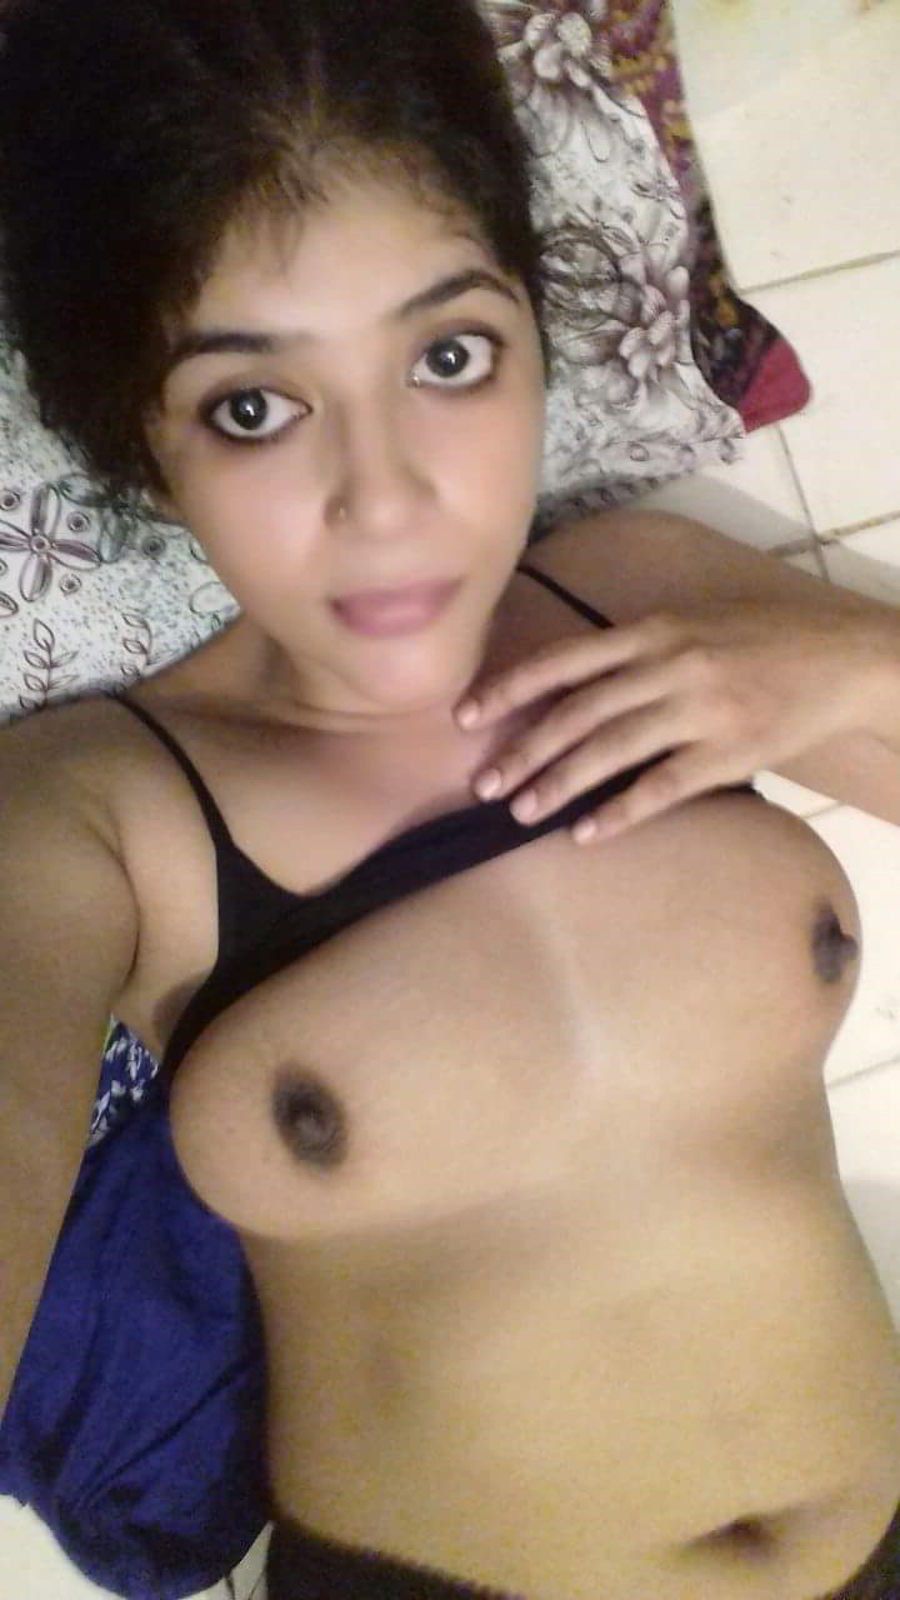 telugu nudist woman pics